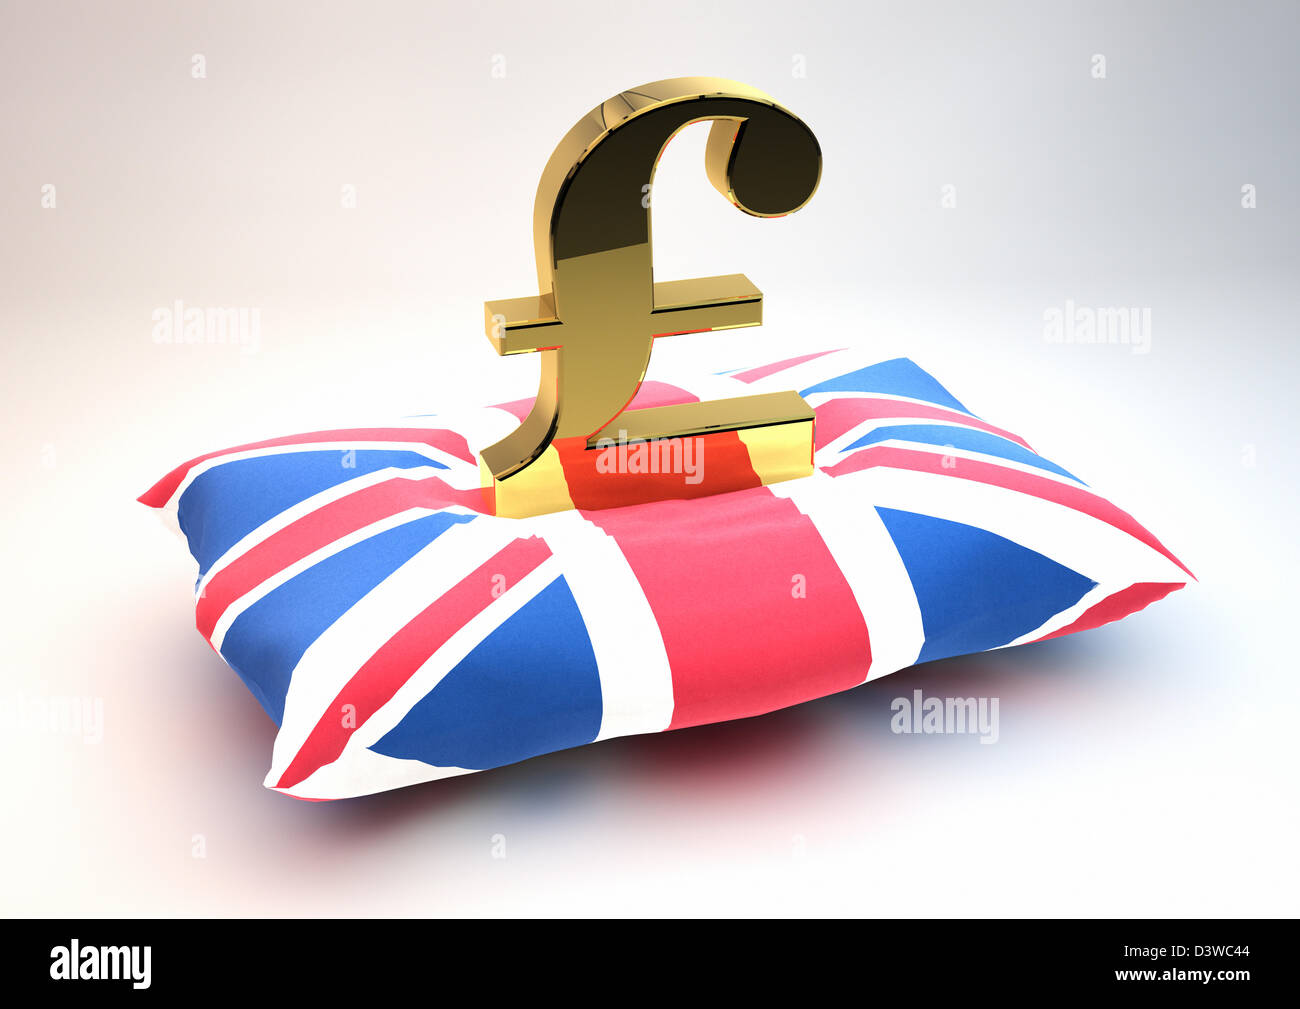 Solid gold britisches Pfund-Symbol auf einem Union Jack Flag gemusterten Kissen sitzen - fallenden Währung zu schützen / Pflege Konzept Stockfoto